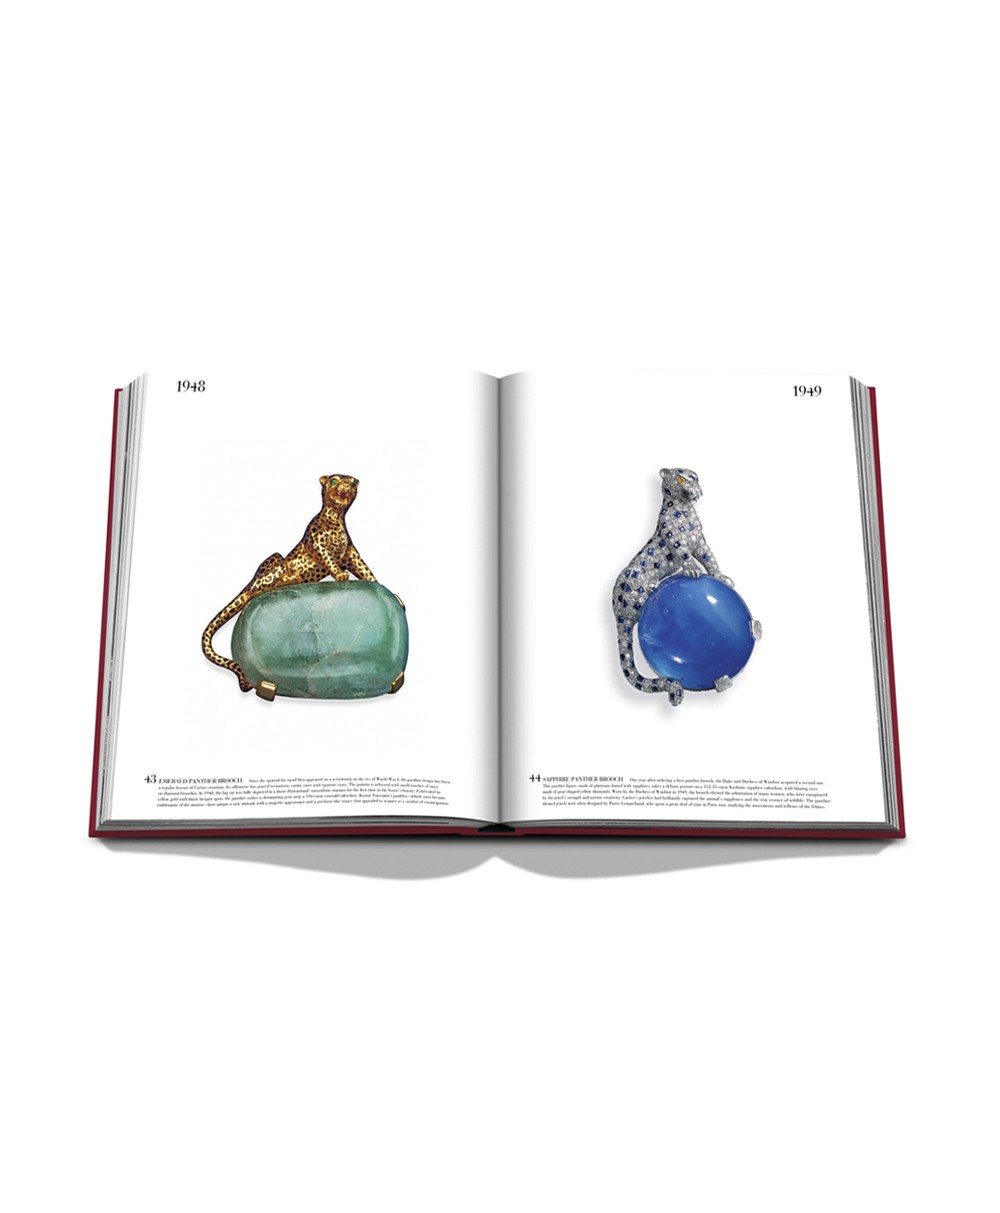 Aufgeschlagene Seite des Bildbands „Cartier: The Impossible Collection“ von Assouline im RAUM concept store 